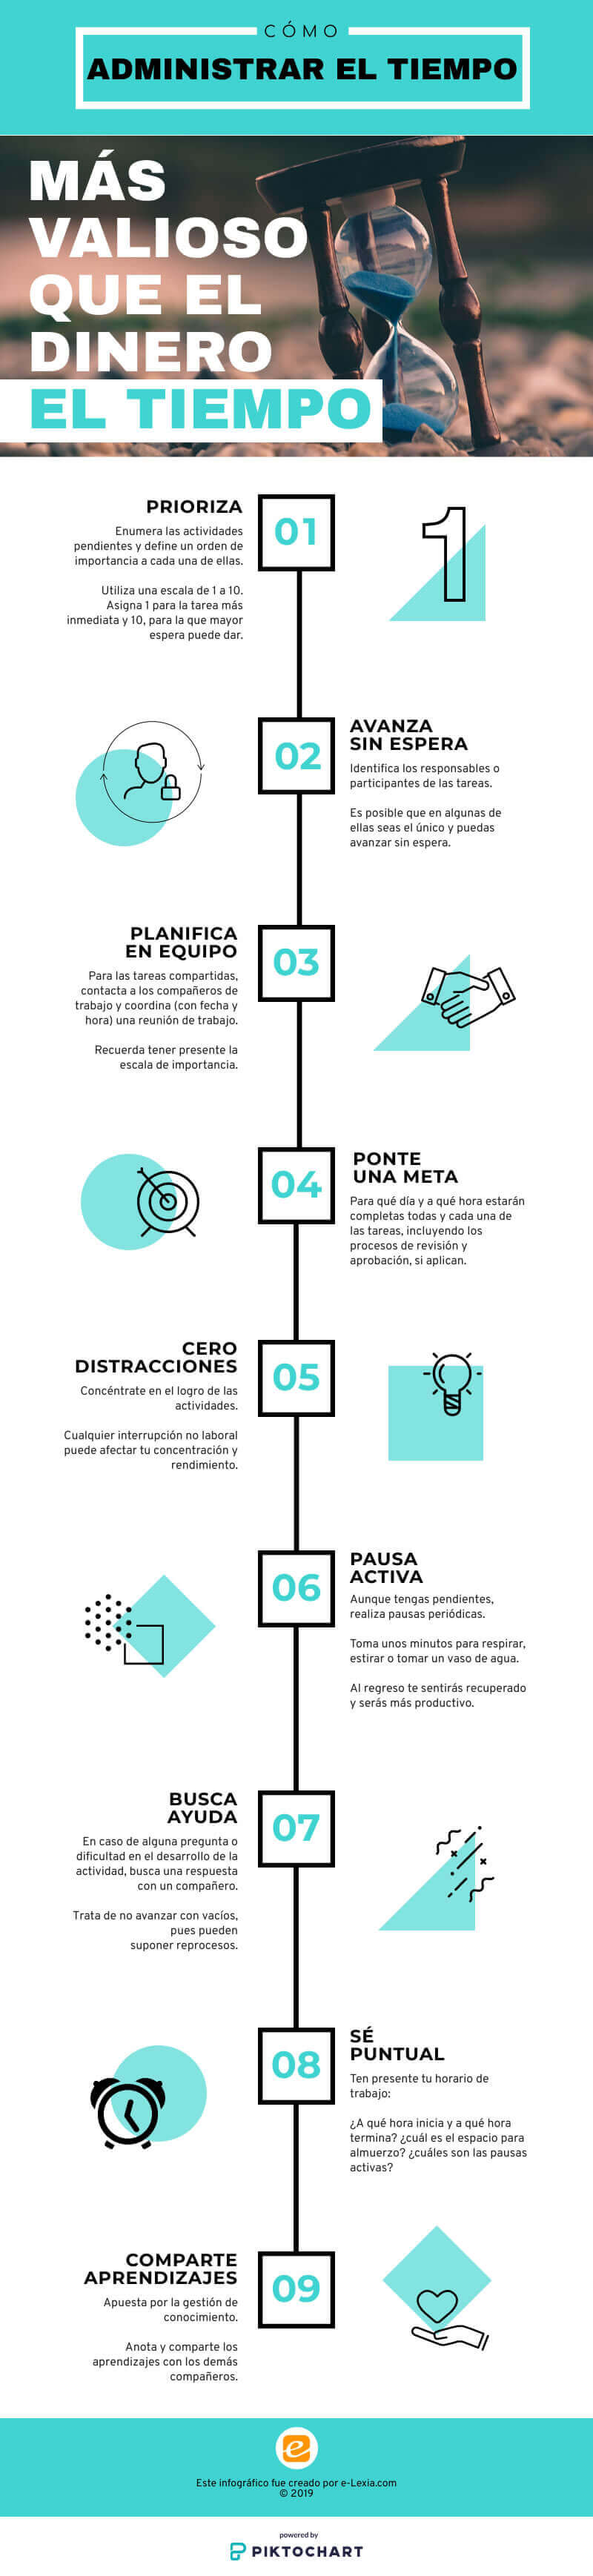 Como administrar el tiempo. 9 consejos. Infográfico. Por Juan Carlos Morales S.